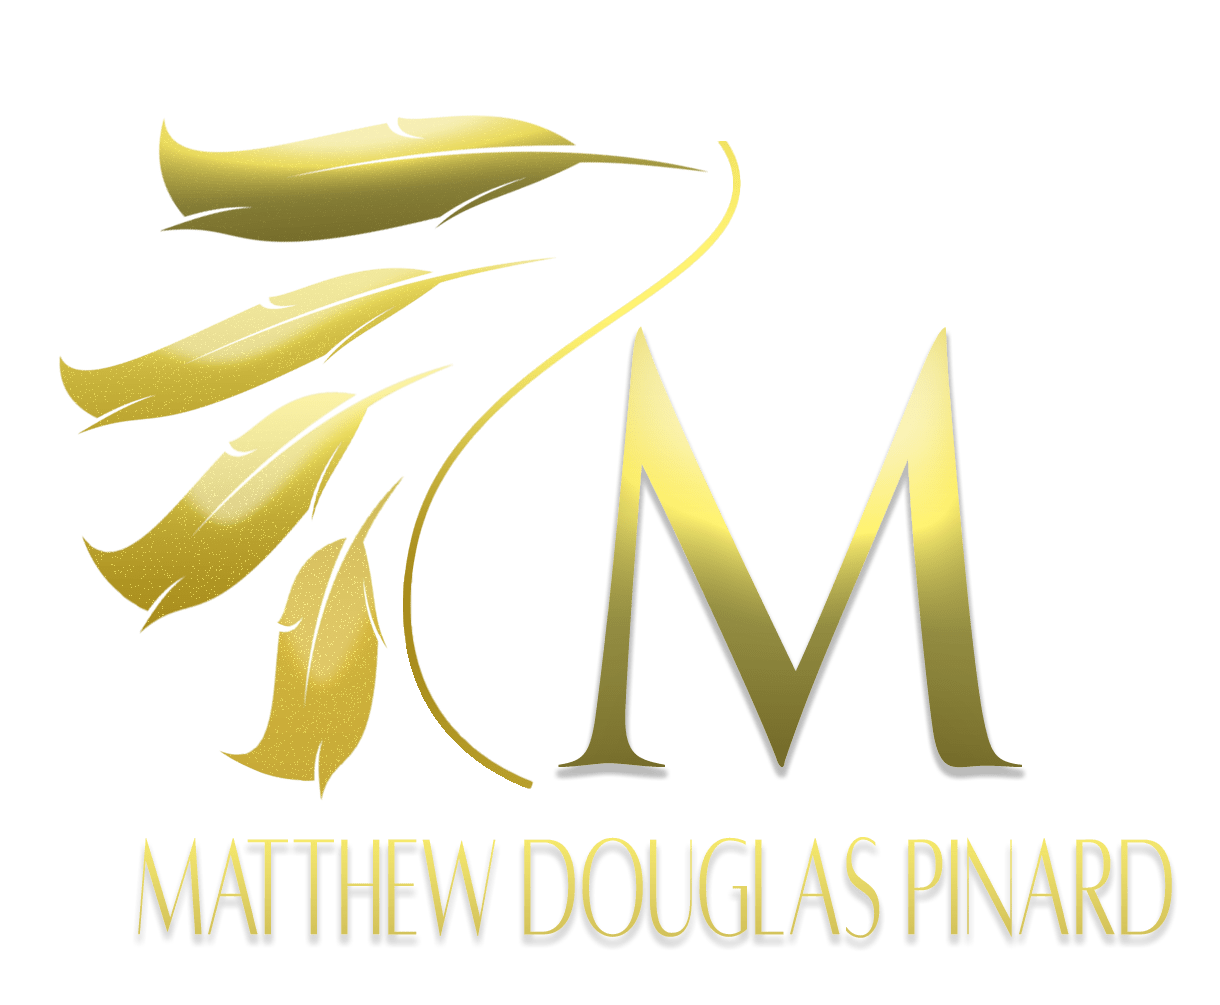 AUTHOR MATTHEW DOUGLAS PINARD